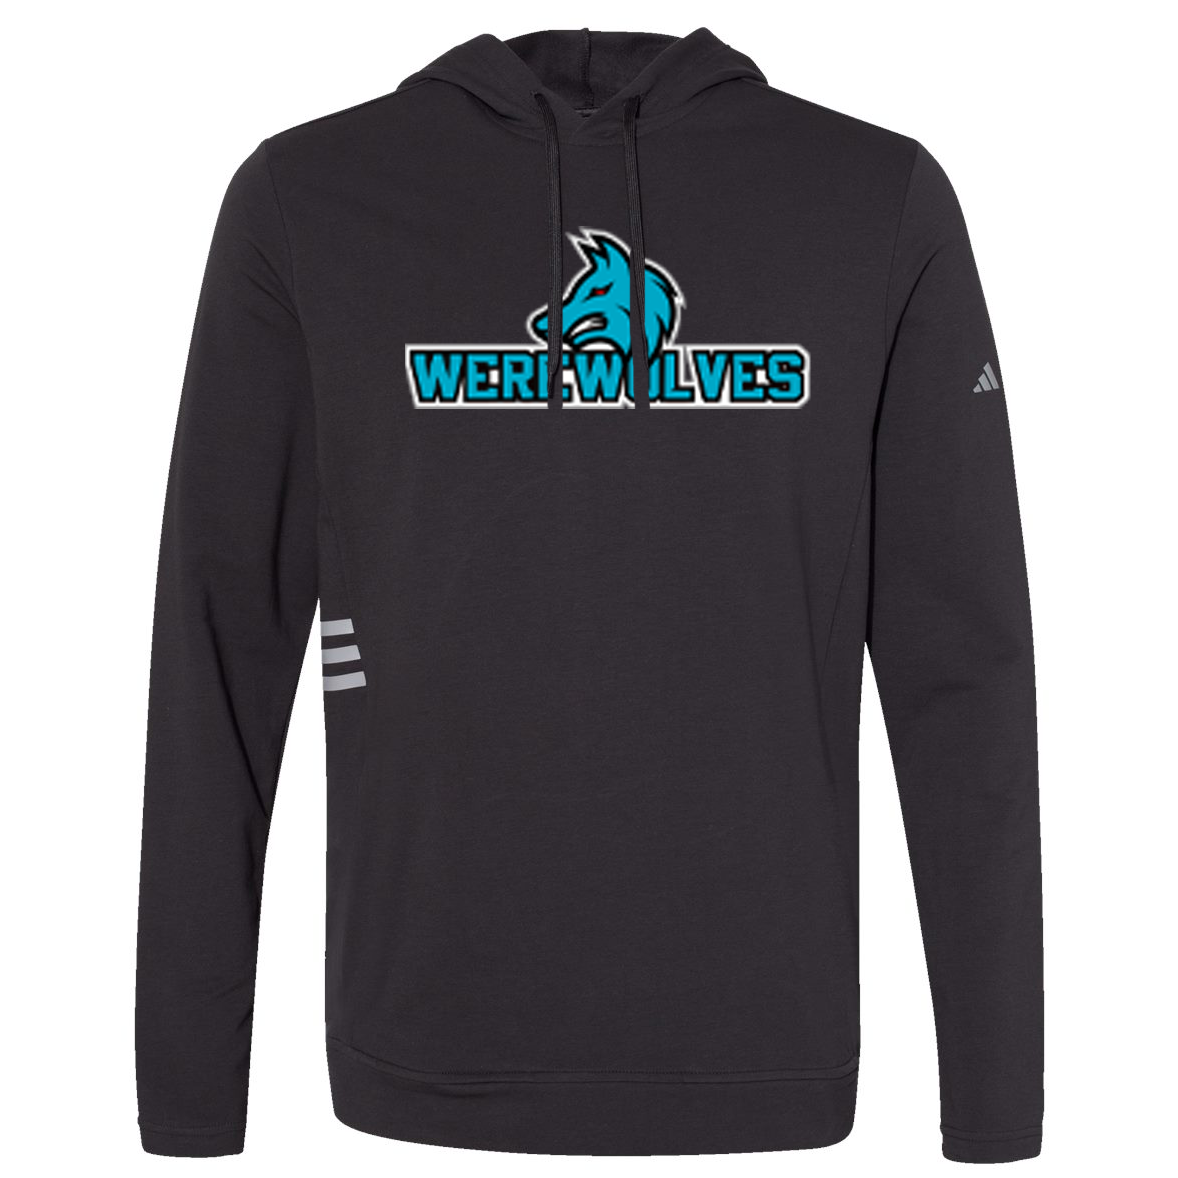 Kansas City Werewolves Adidas Lightweight Sweatshirt